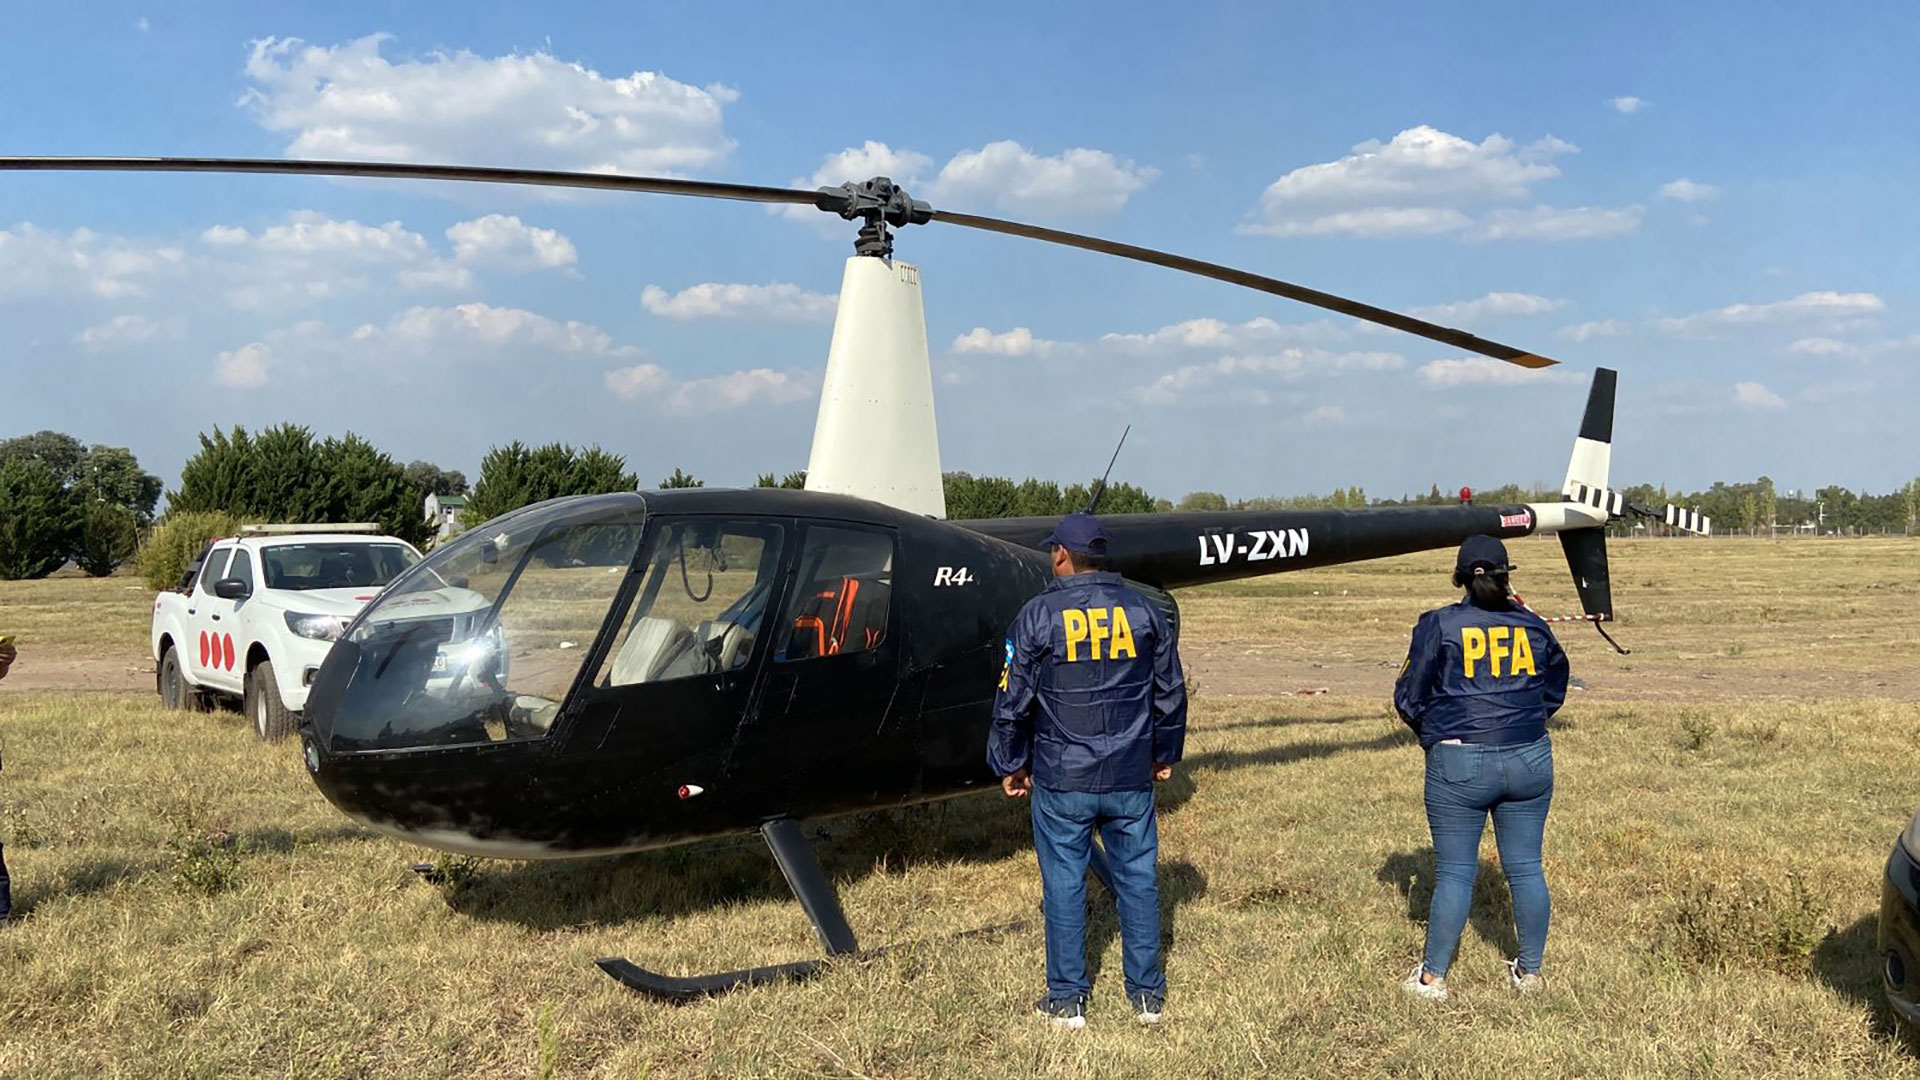 El helicóptero secuestrado había sido comprado en el extranjero